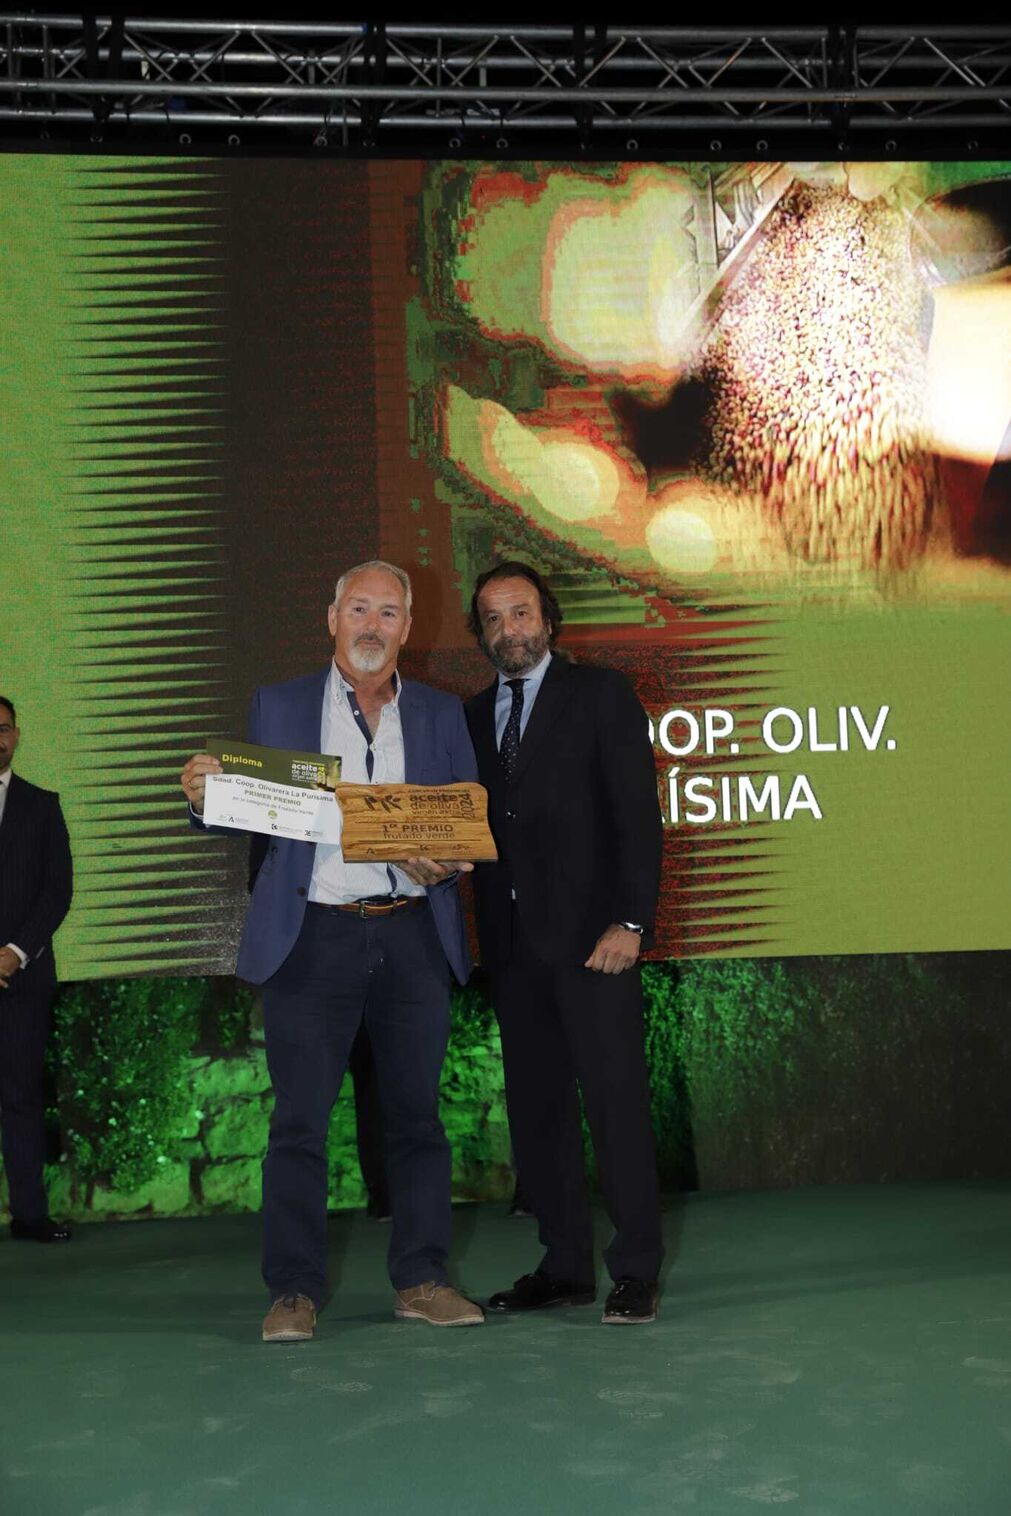 La entrega de premios del XVII Concurso de Aceites de Oliva de la Diputaci&oacute;n de C&oacute;rdoba, en im&aacute;genes